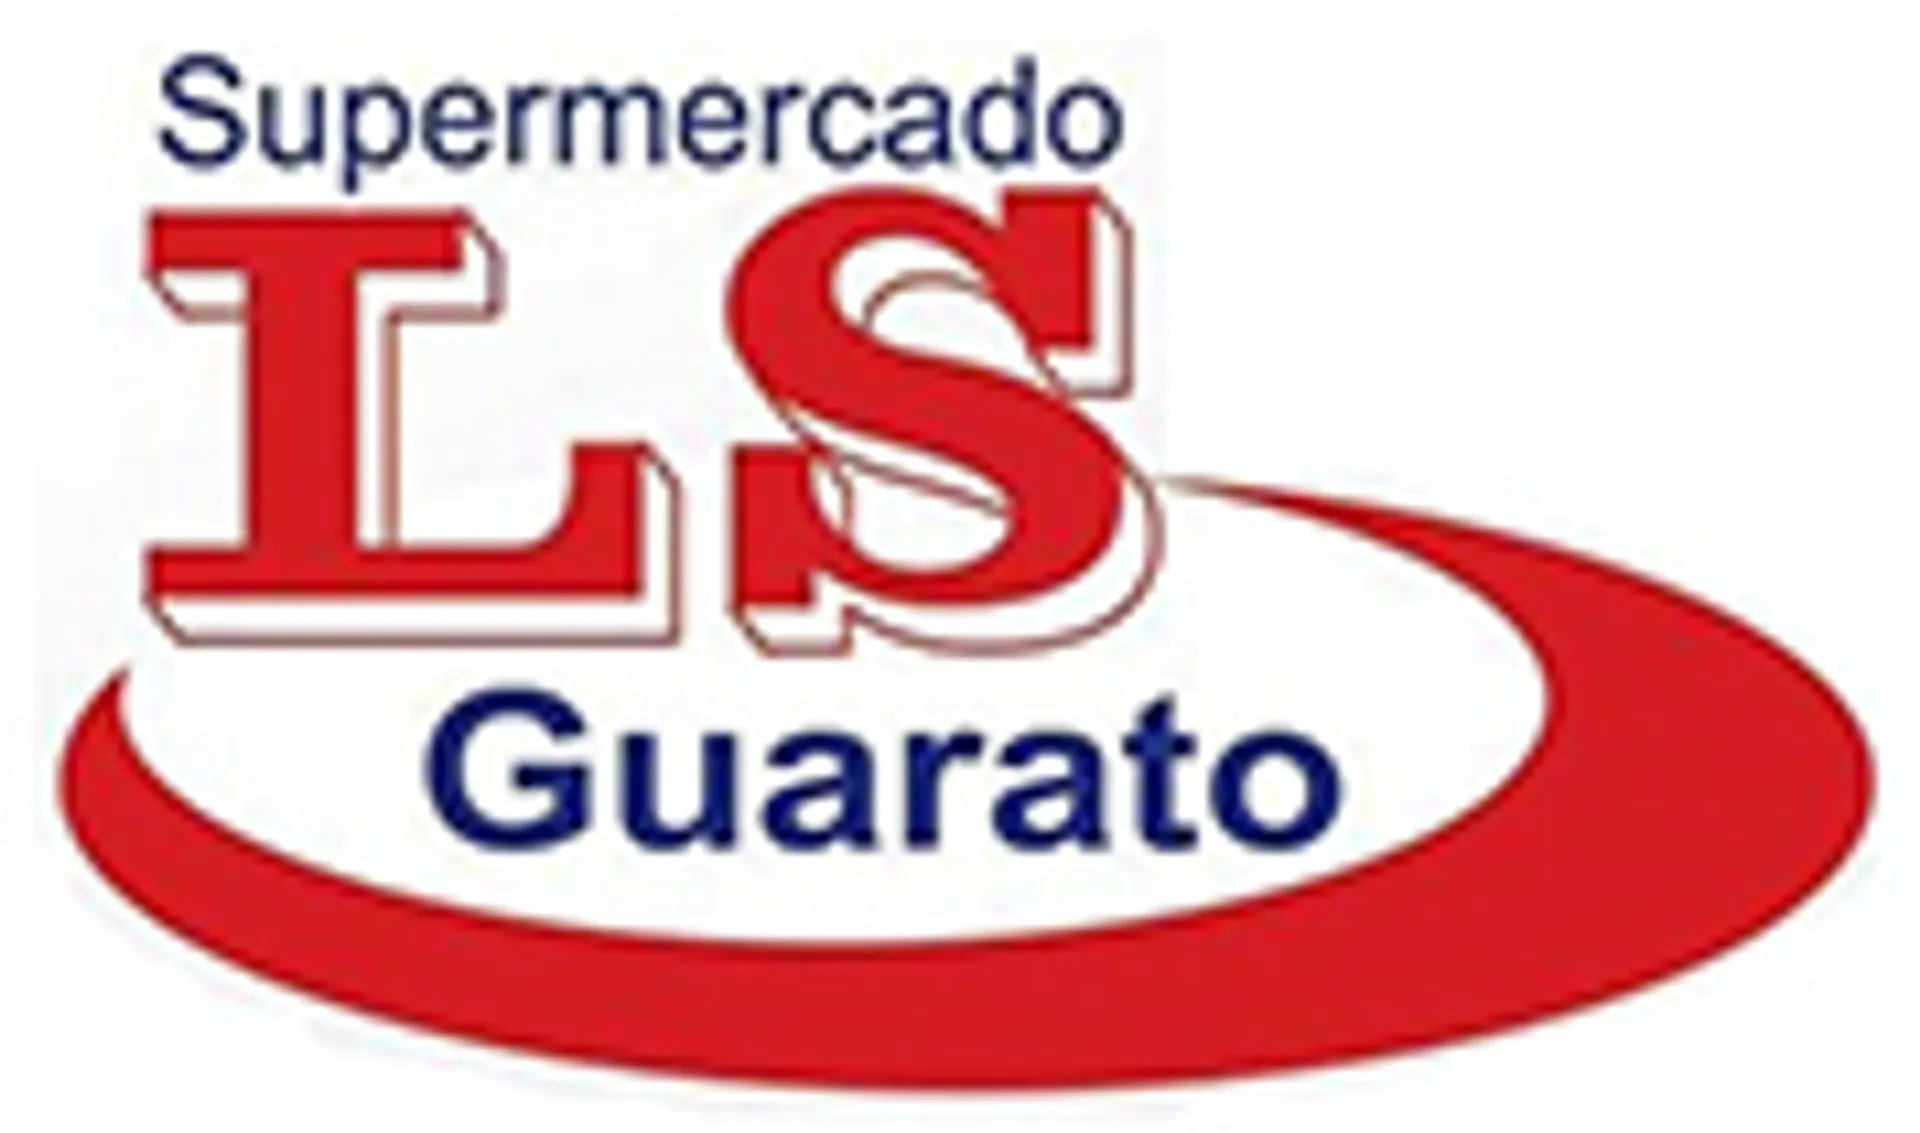 SUPERMERCADO LS GUARATO logo